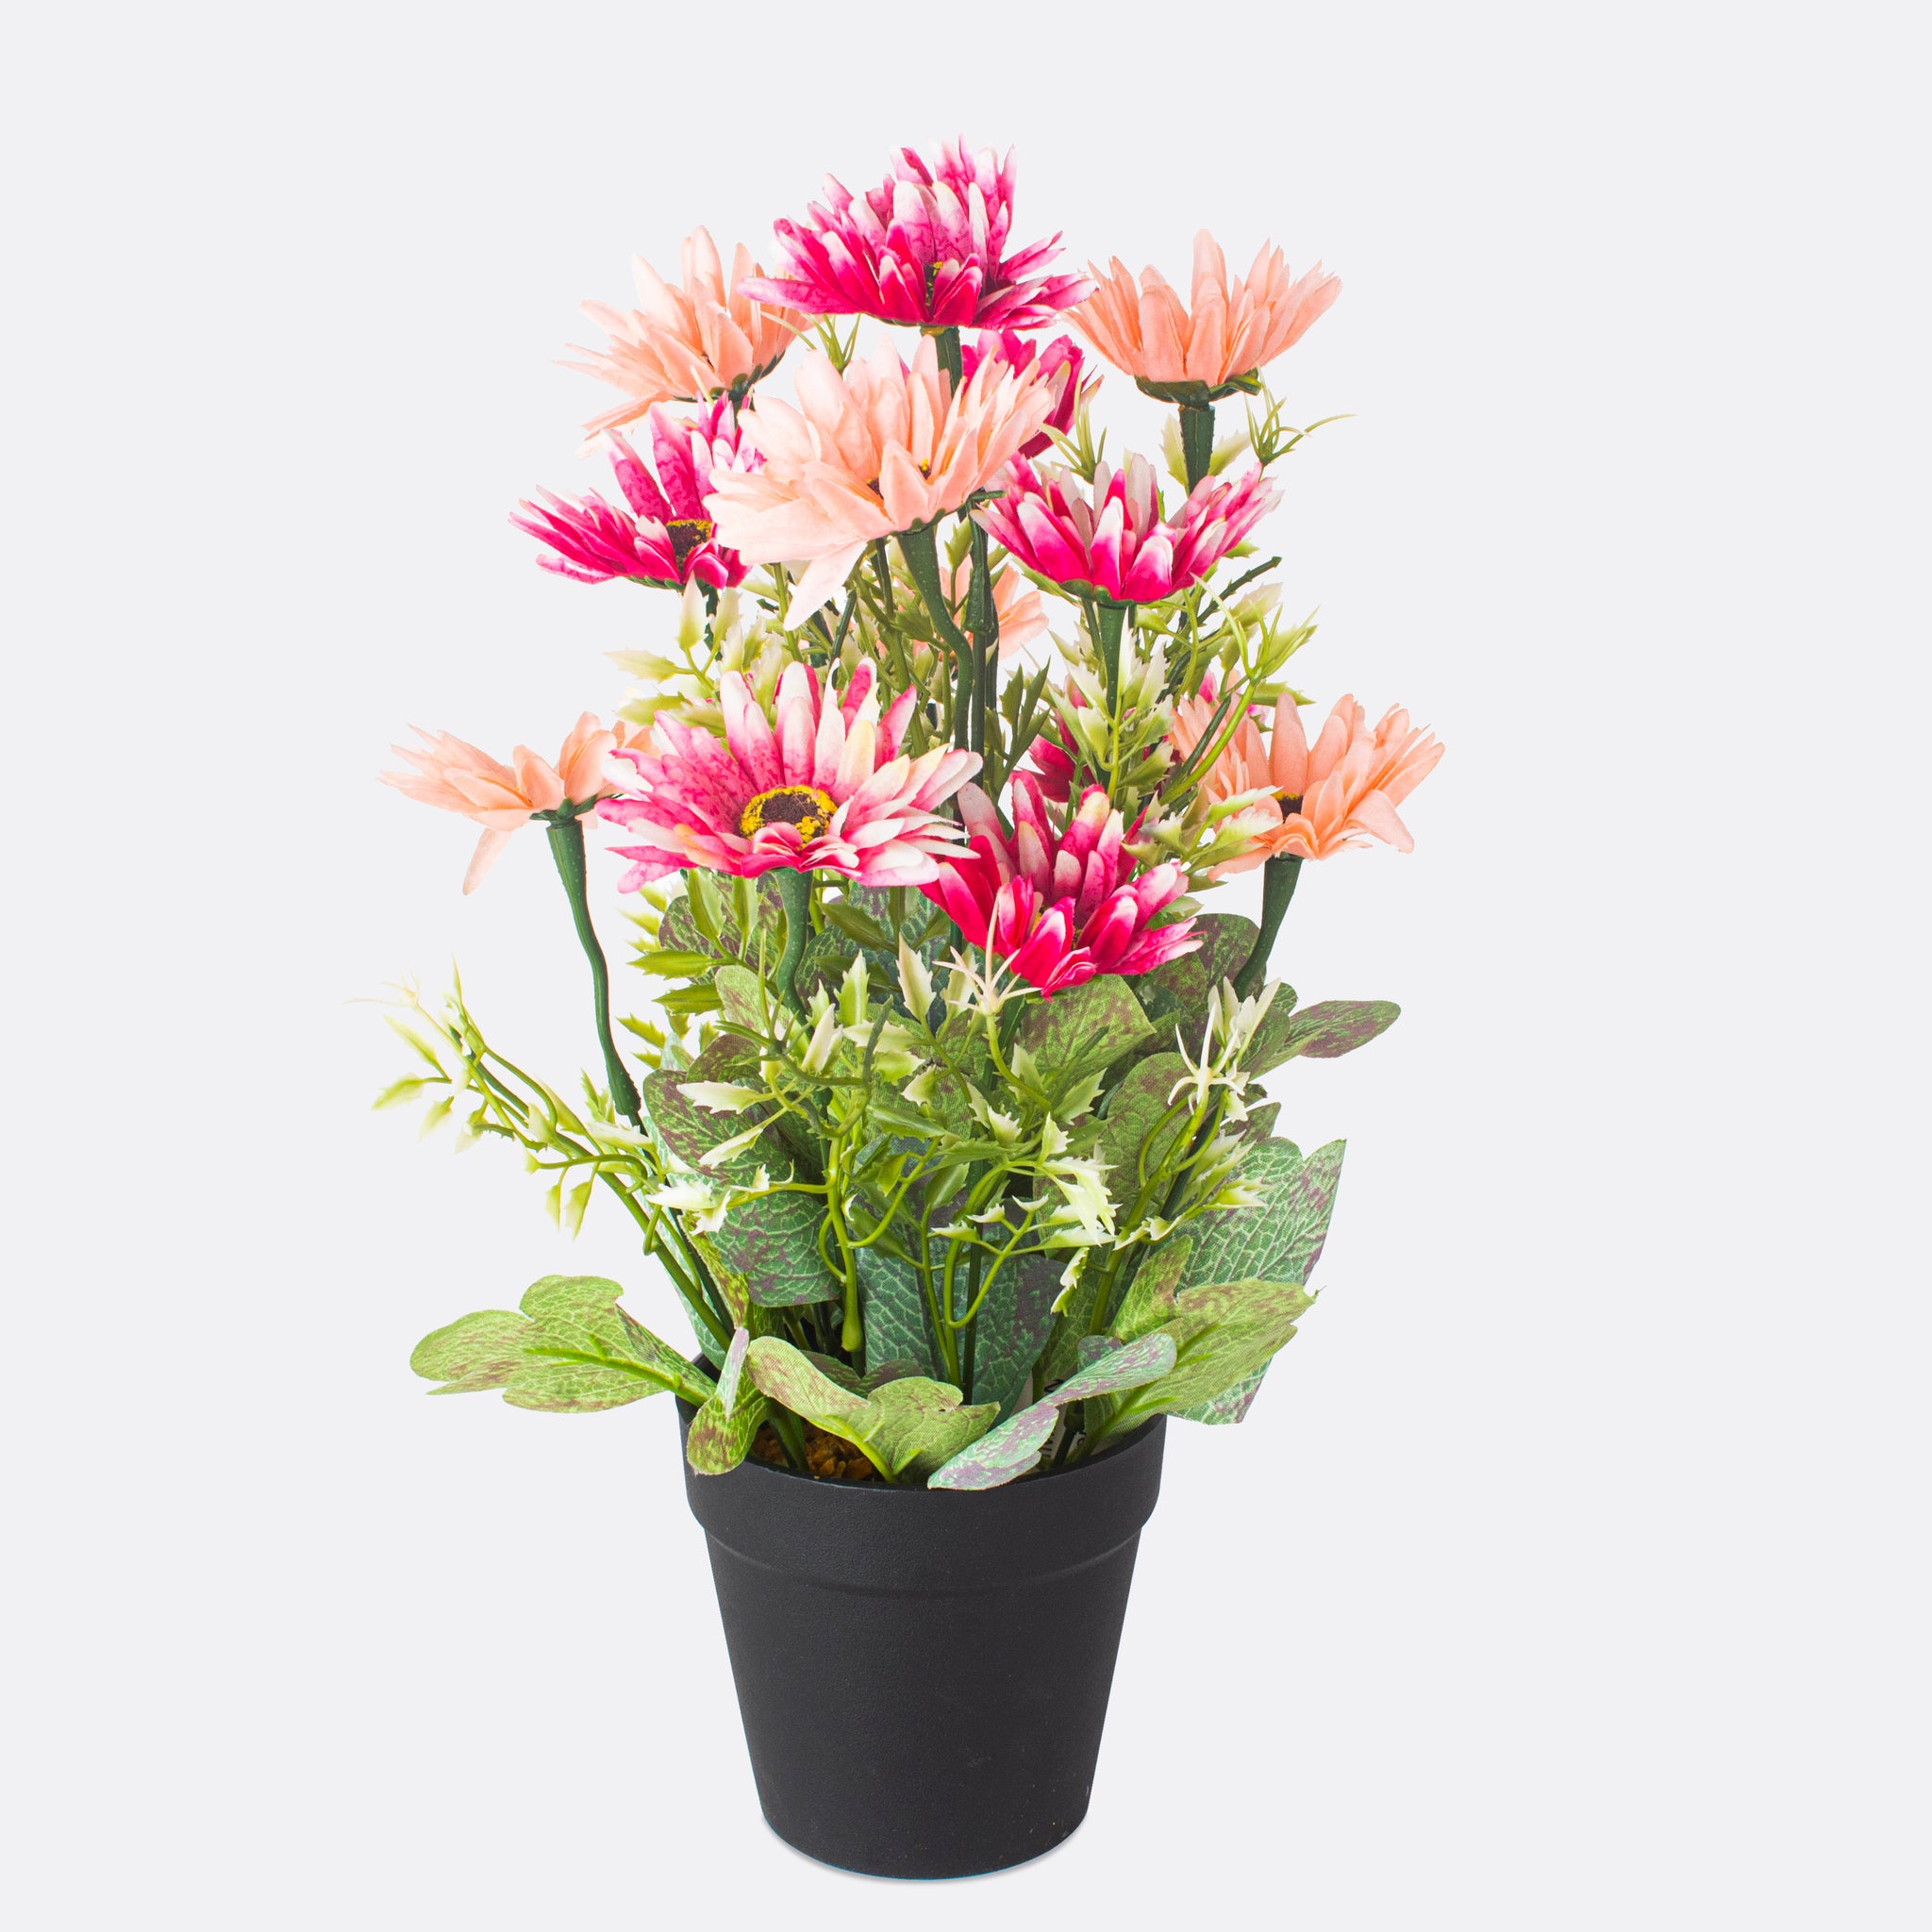 Tropical Bloom Arrangement With Ductile Pot